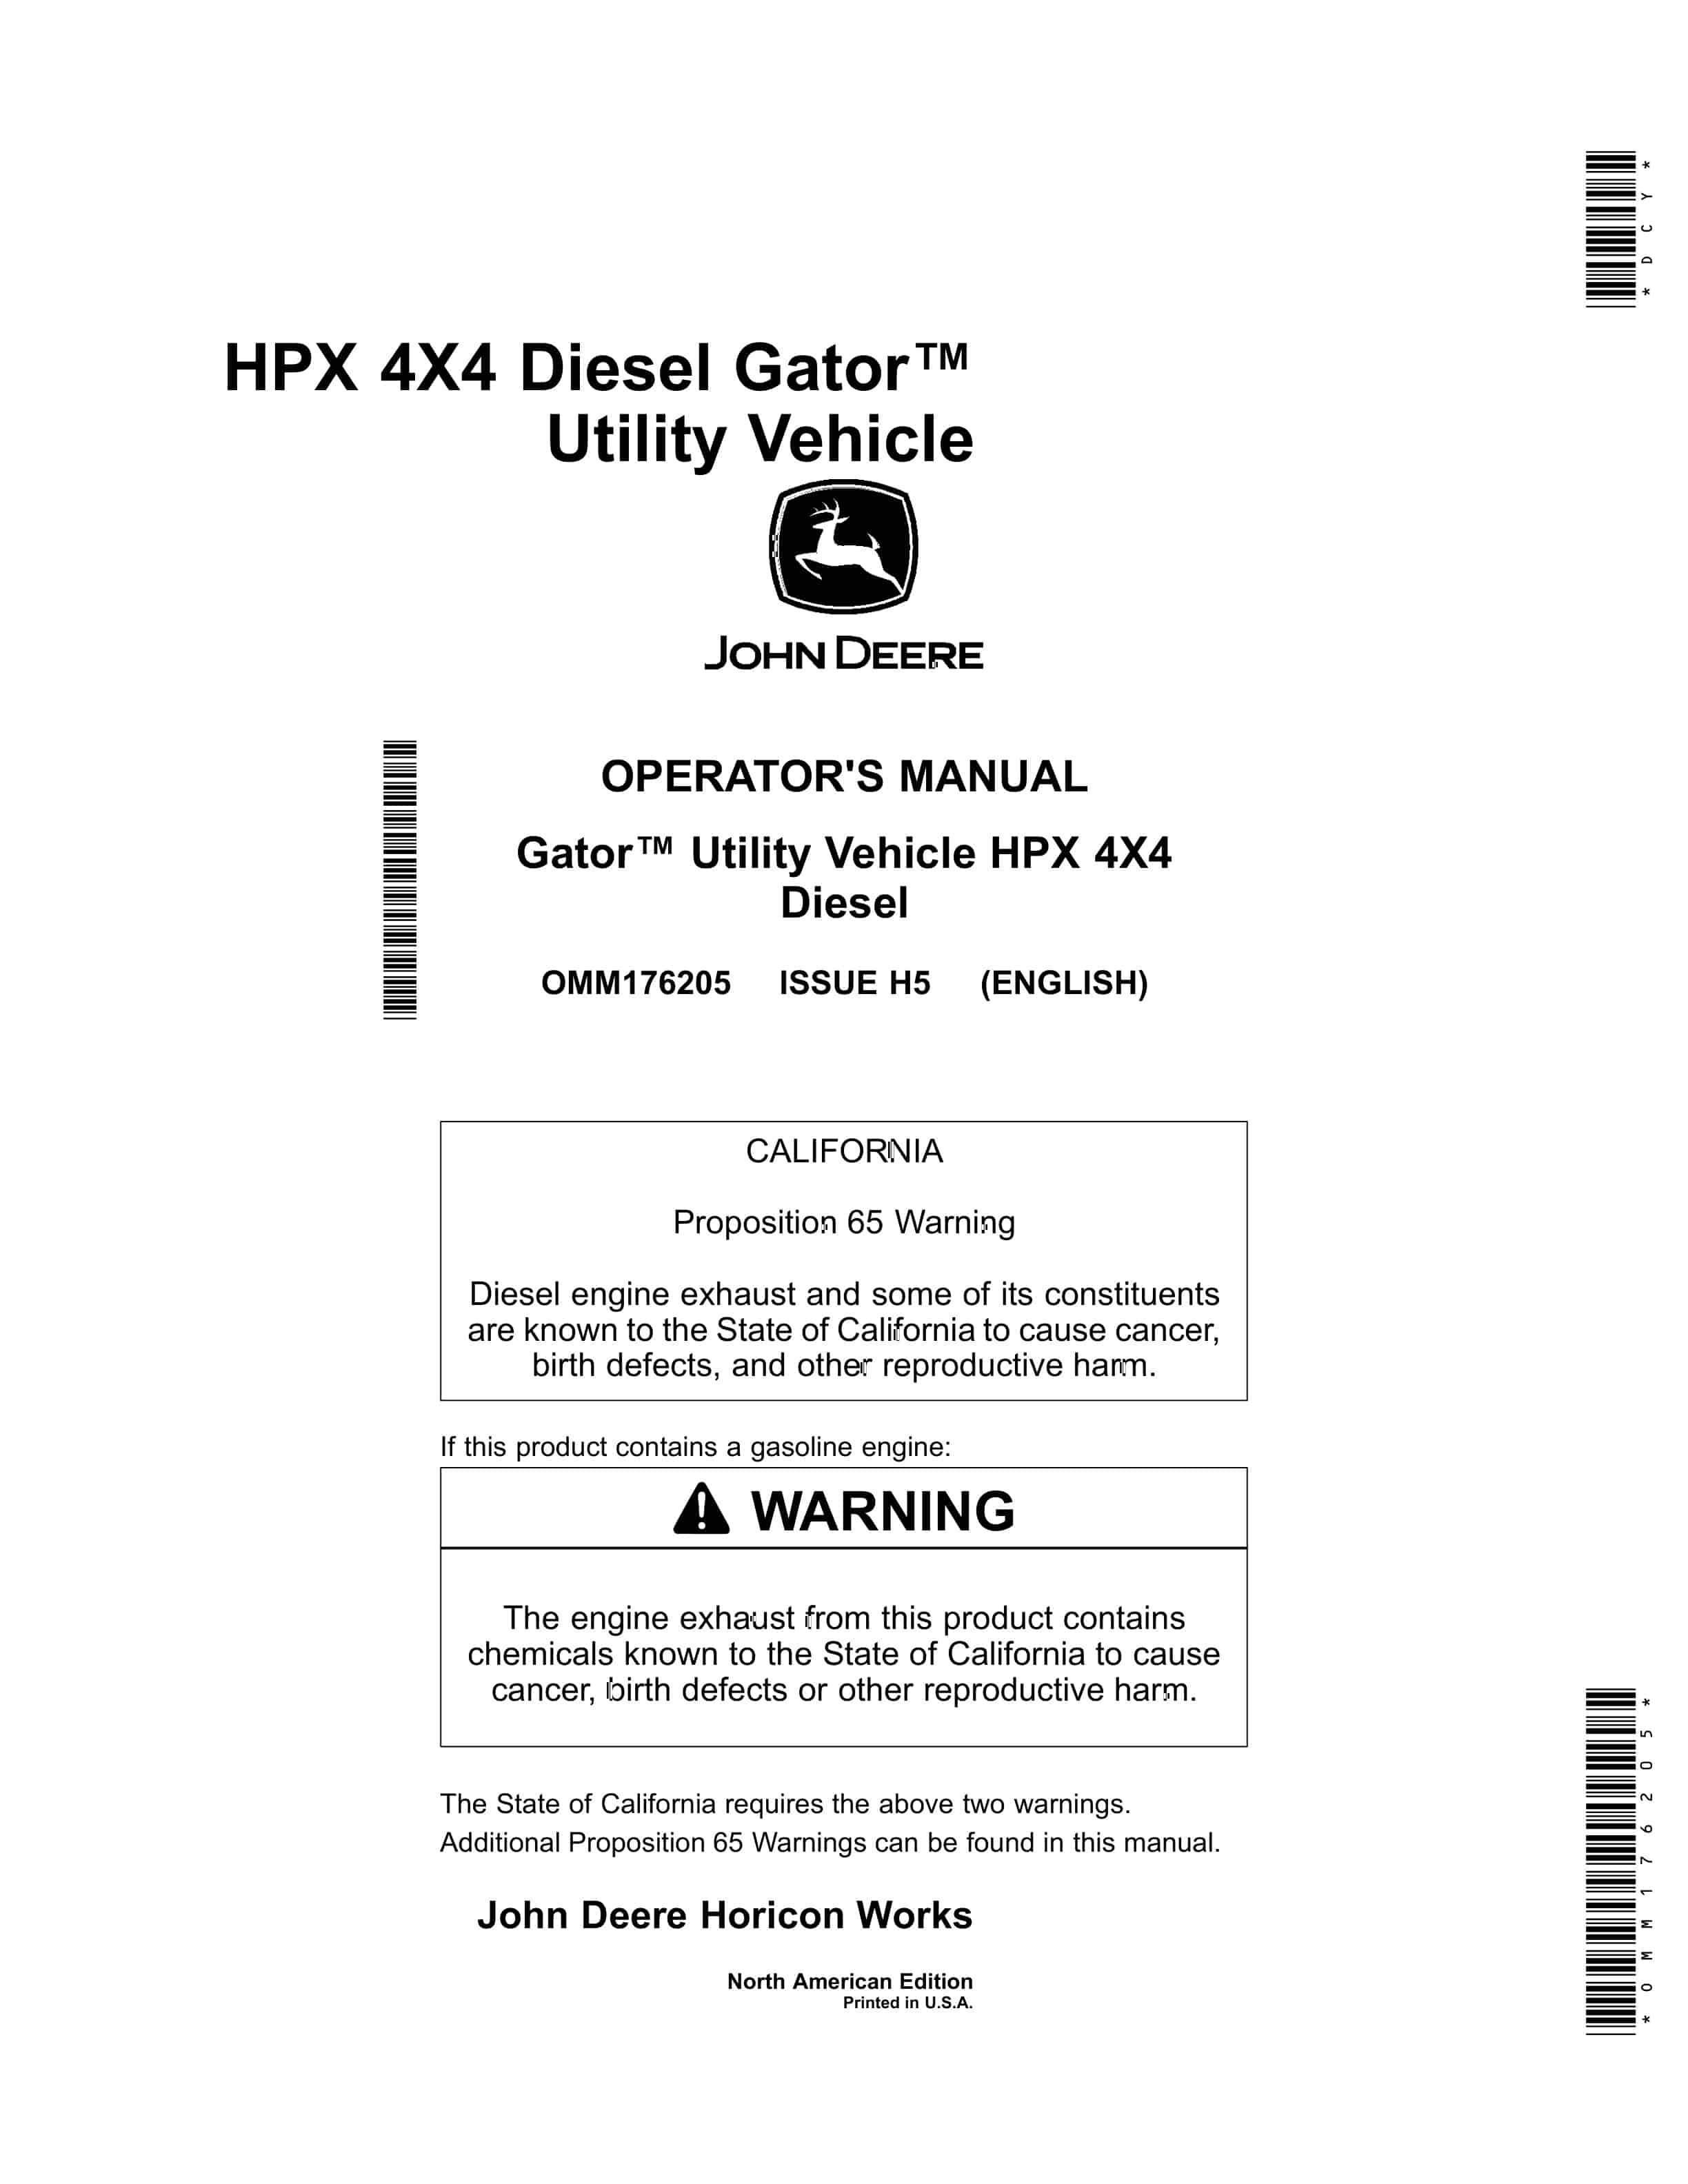 John Deere HPX 4X4 Diesel Gator Utility Vehicles Operator Manual OMM176205 1